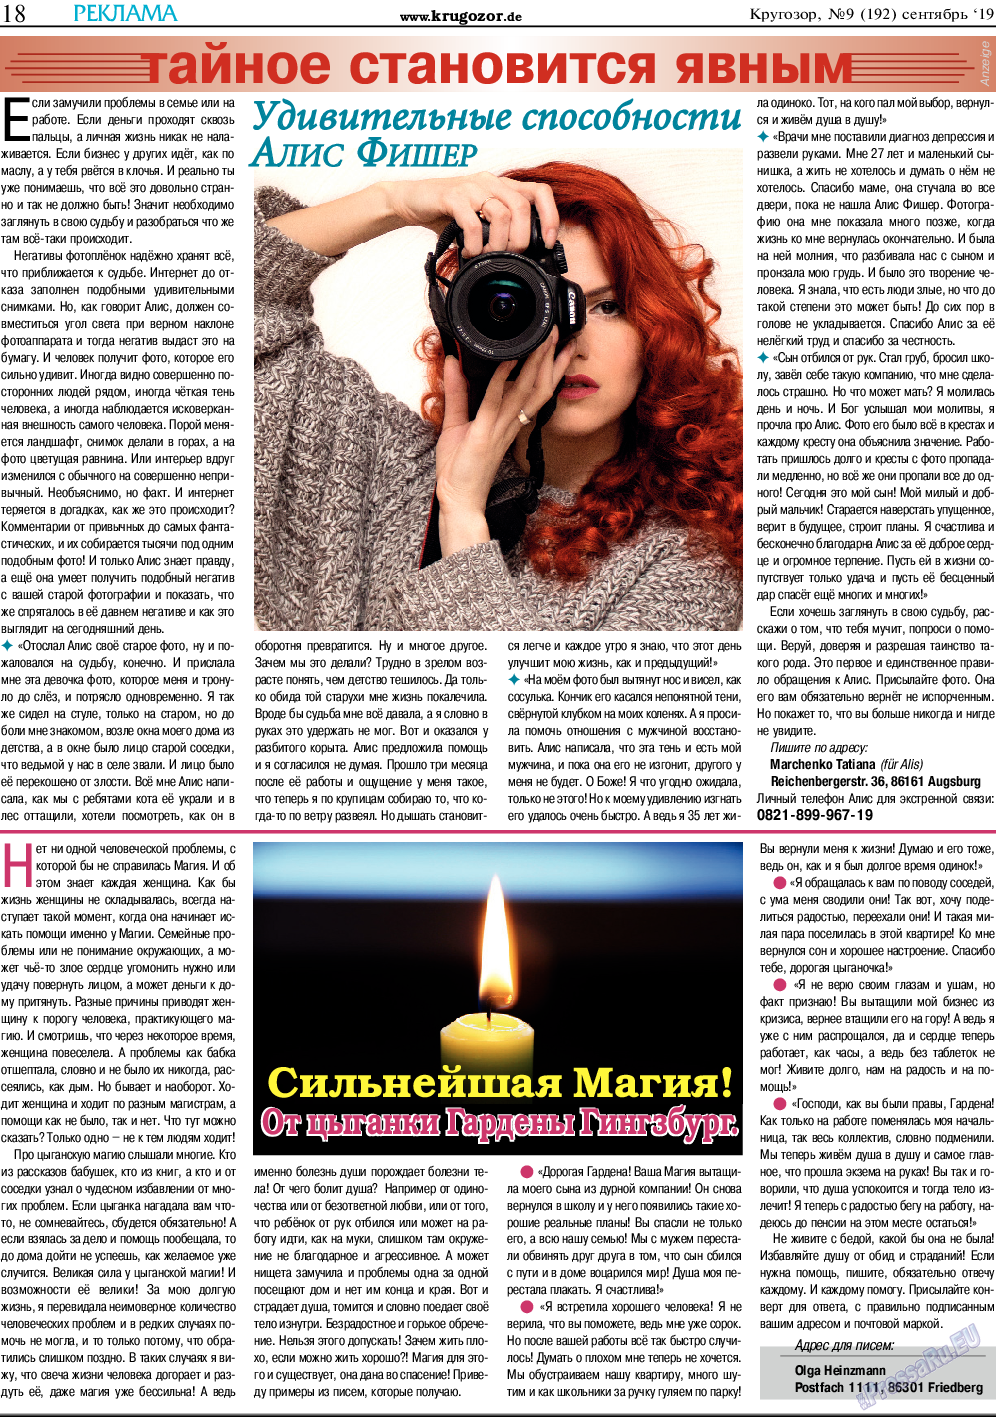 Кругозор, газета. 2019 №9 стр.18